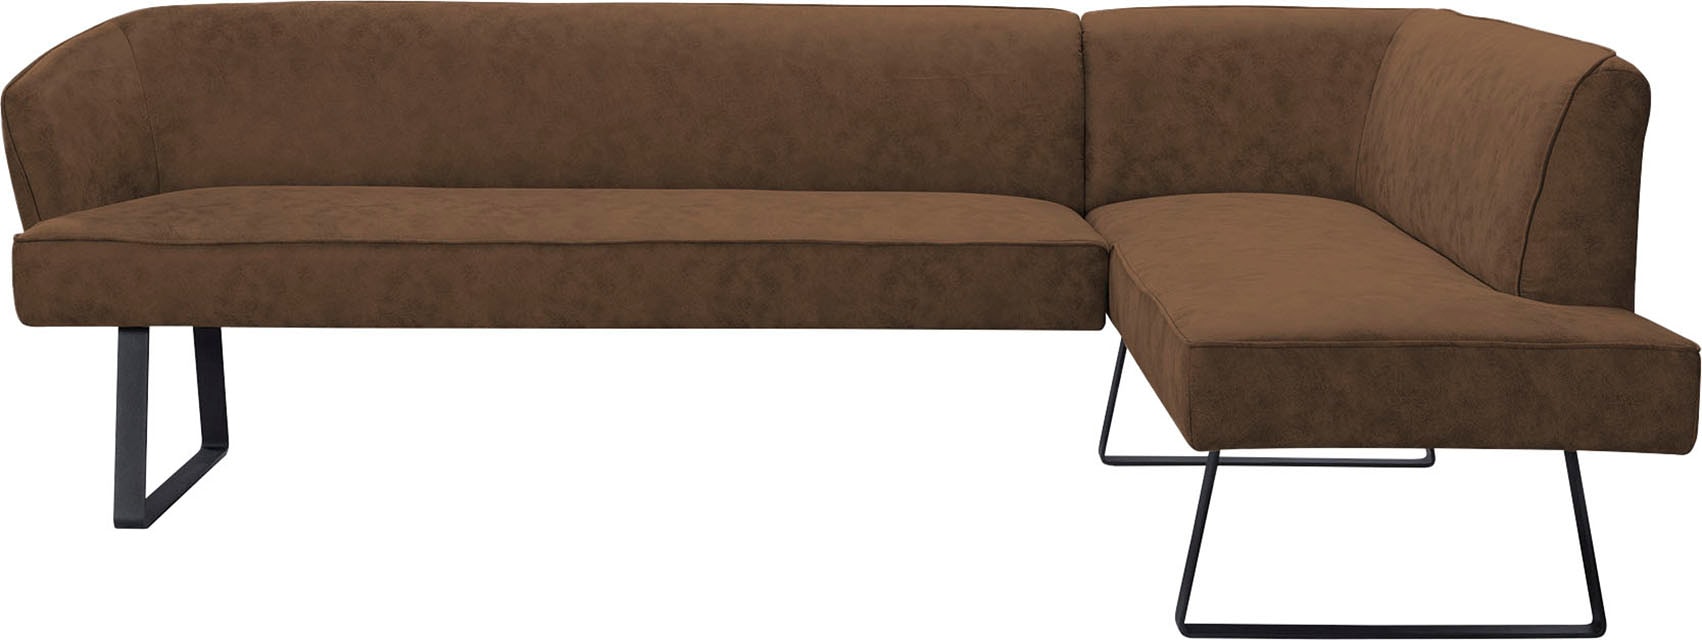 exxpo - sofa fashion Eckbank »Americano«, mit Keder und Metallfüßen, Bezug in verschiedenen Qualitäten